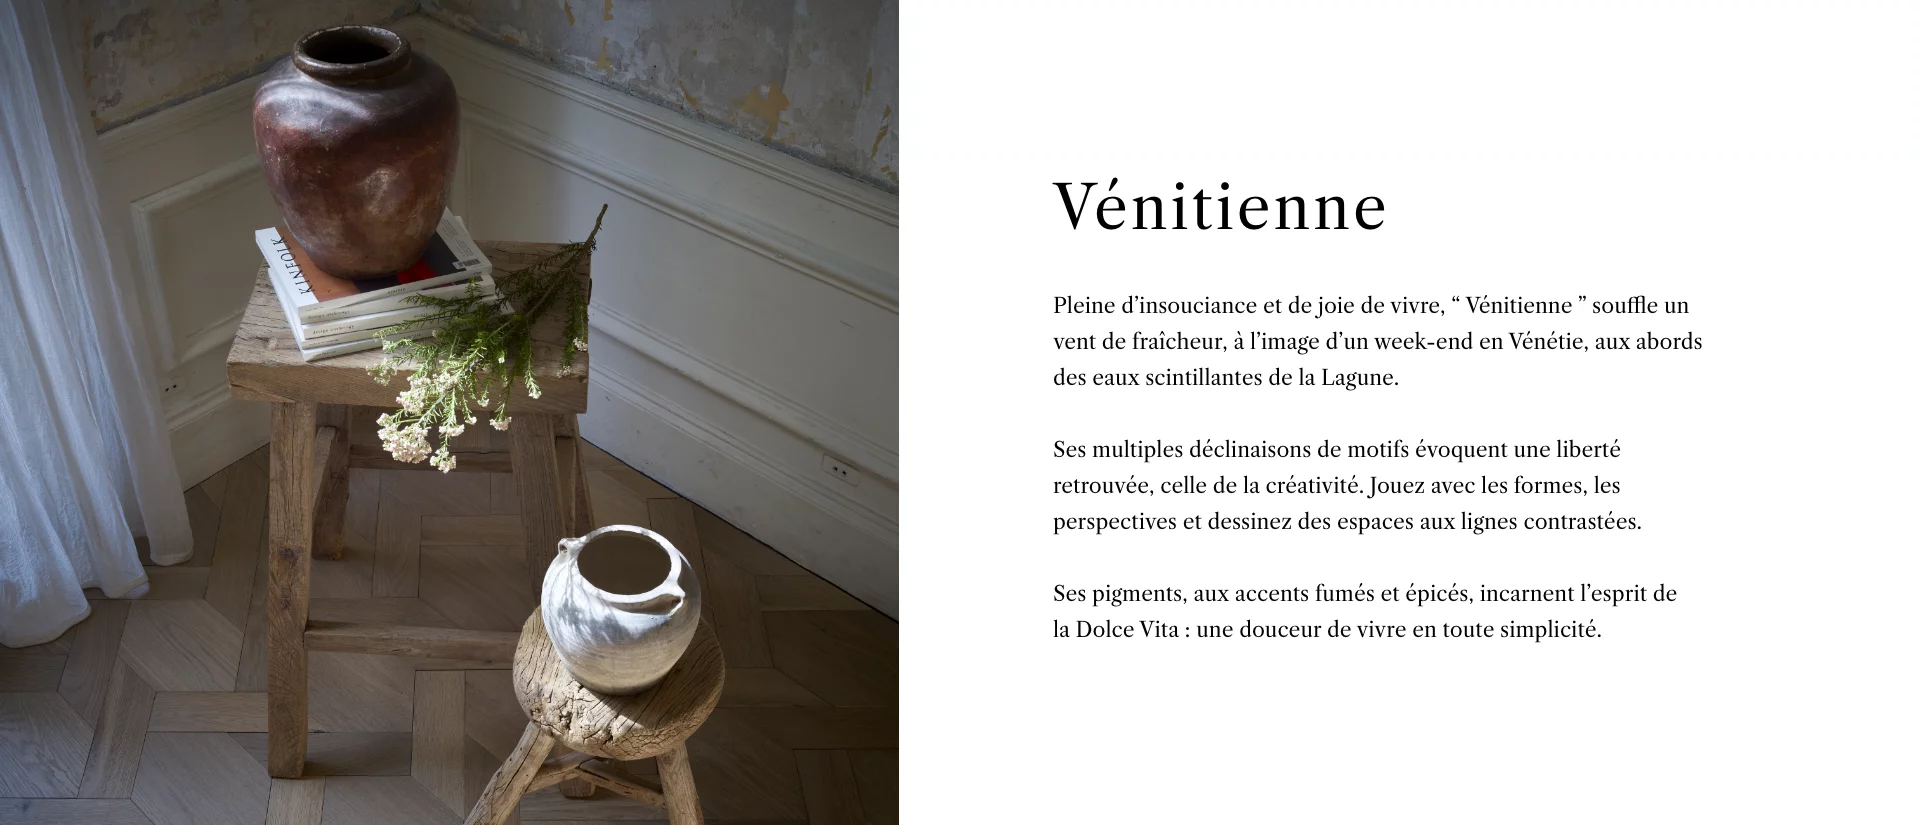 Collection Venitienne - Description